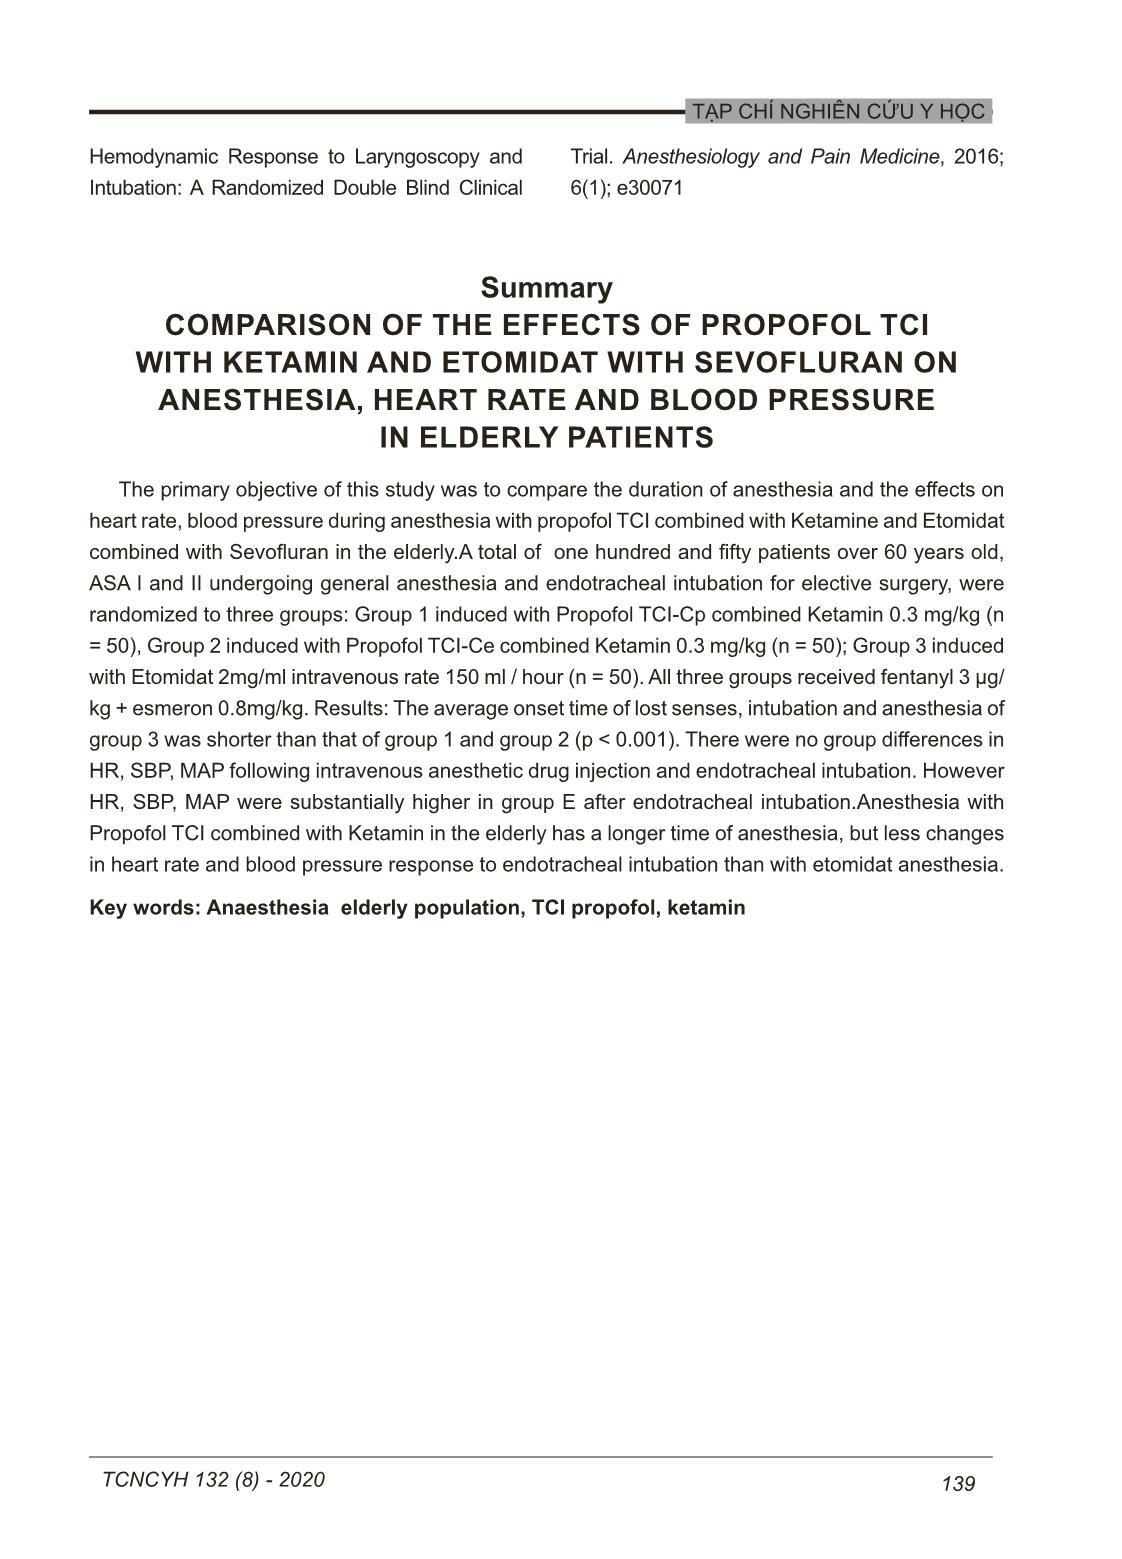 So sánh hiệu quả khởi mê và tác dụng trên nhịp tim, huyết áp giữa gây mê kết hợp propofol TCI với ketamin và etomidat với sevofluran ở người cao tuổi trang 9